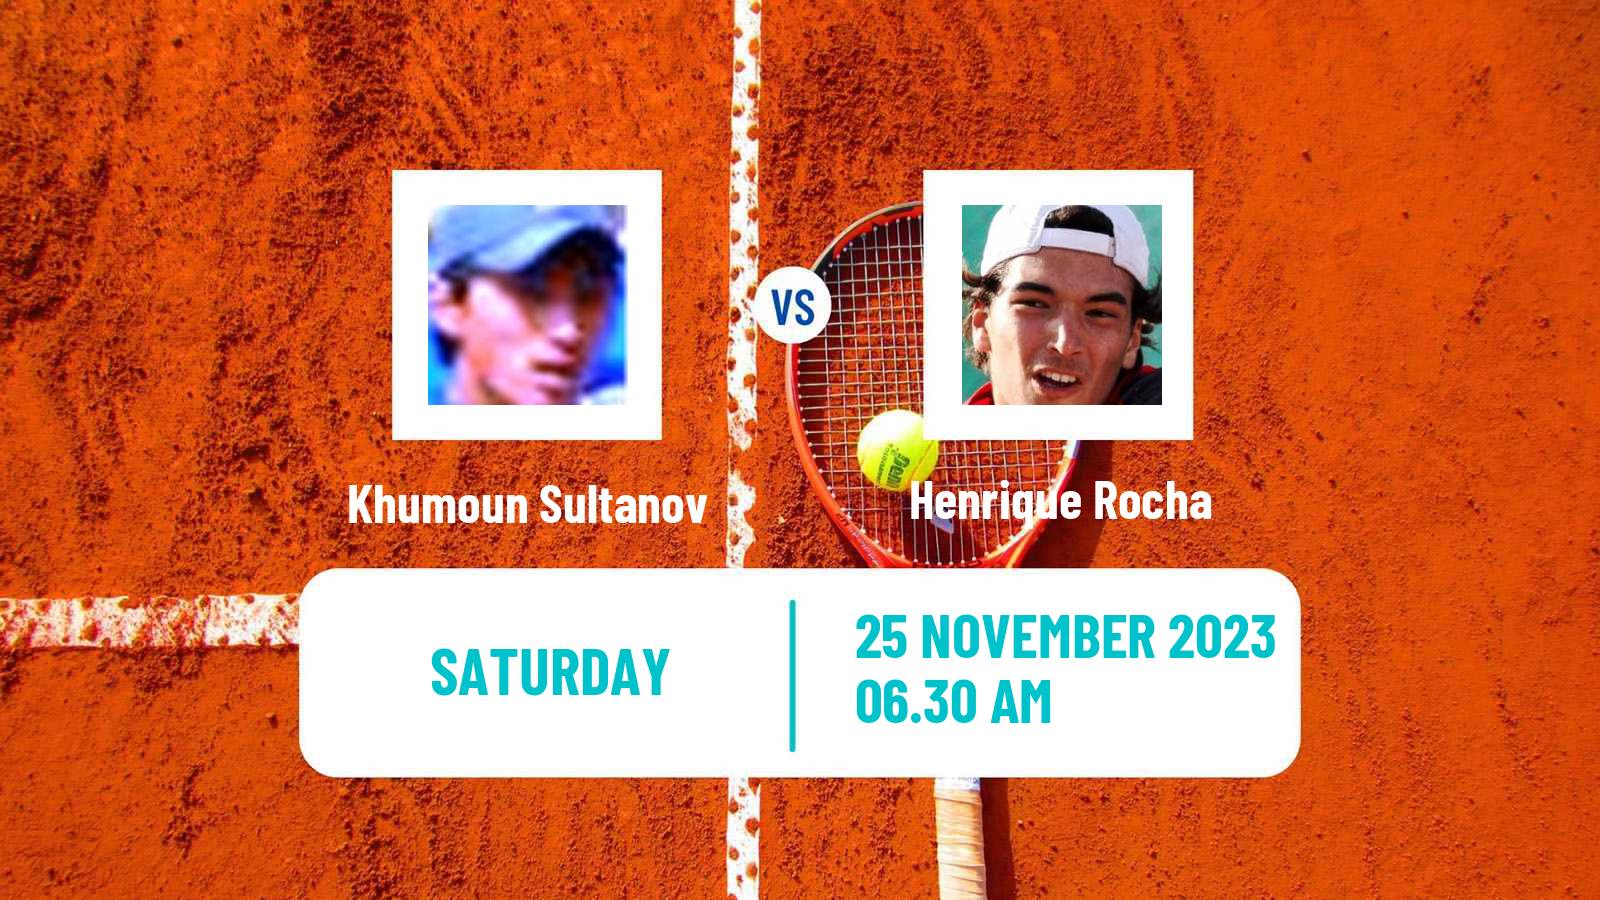 Tennis ITF M25 Vale Do Lobo 2 Men Khumoun Sultanov - Henrique Rocha